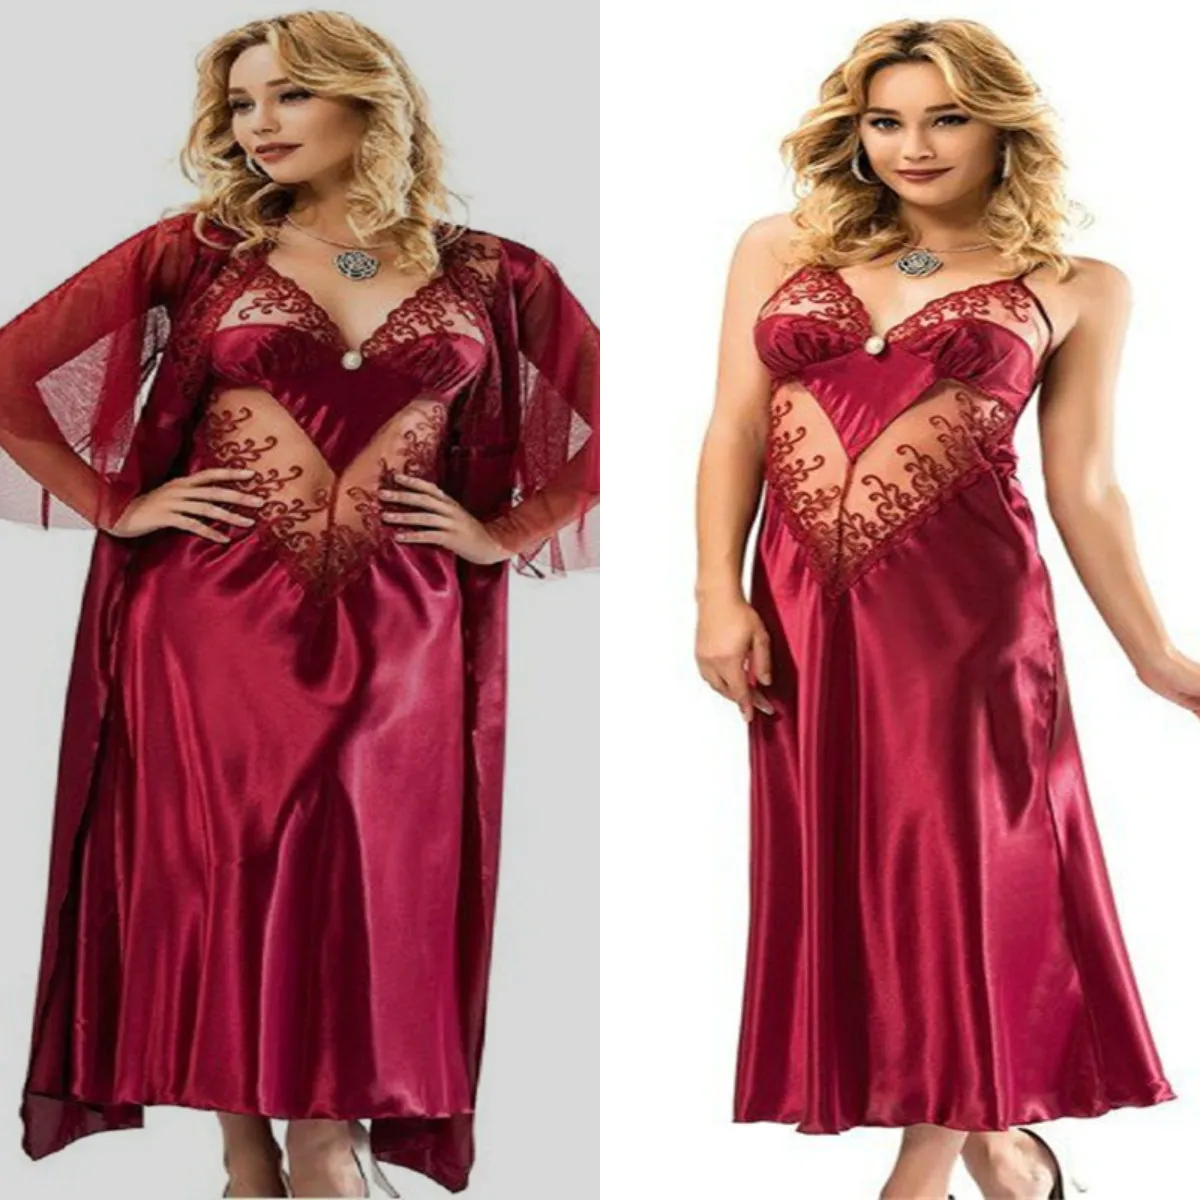 Gece Kıyafeti için Kadınlara sayesinde Kızıl İki Adet Düğün Elbiseler Spagetti Askı Kolsuz Aplike Dantel Nedime Robe Saten İpek Dantelli bakın